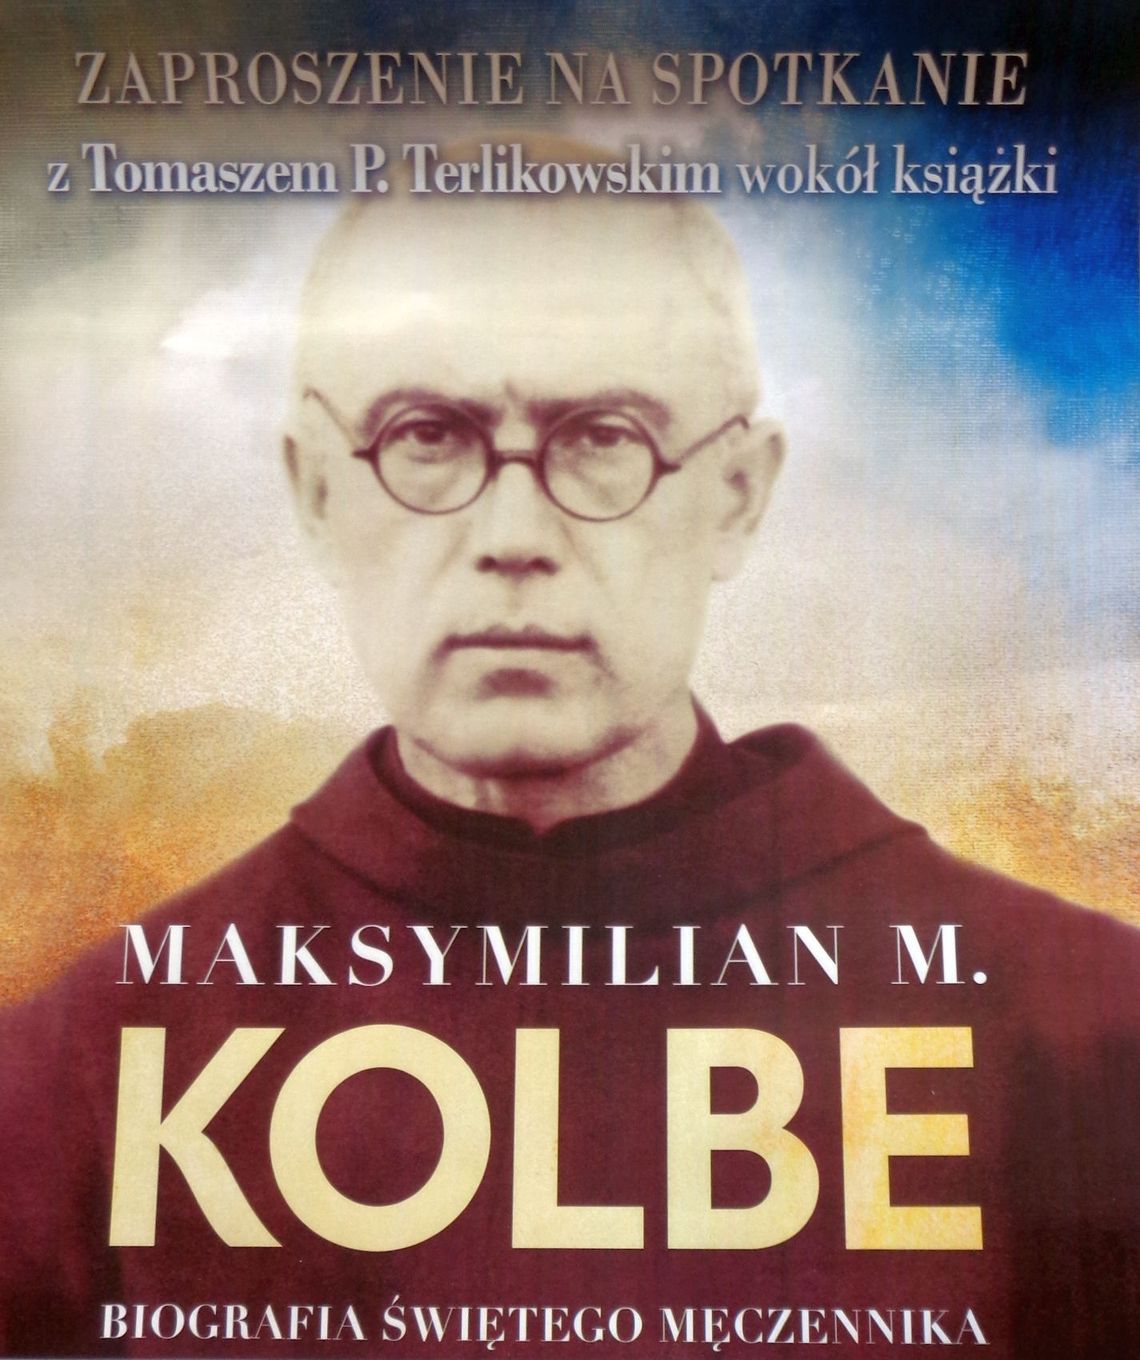 "Maksymilian M.Kolbe-Biografia świetego męczennika" - spotkanie.